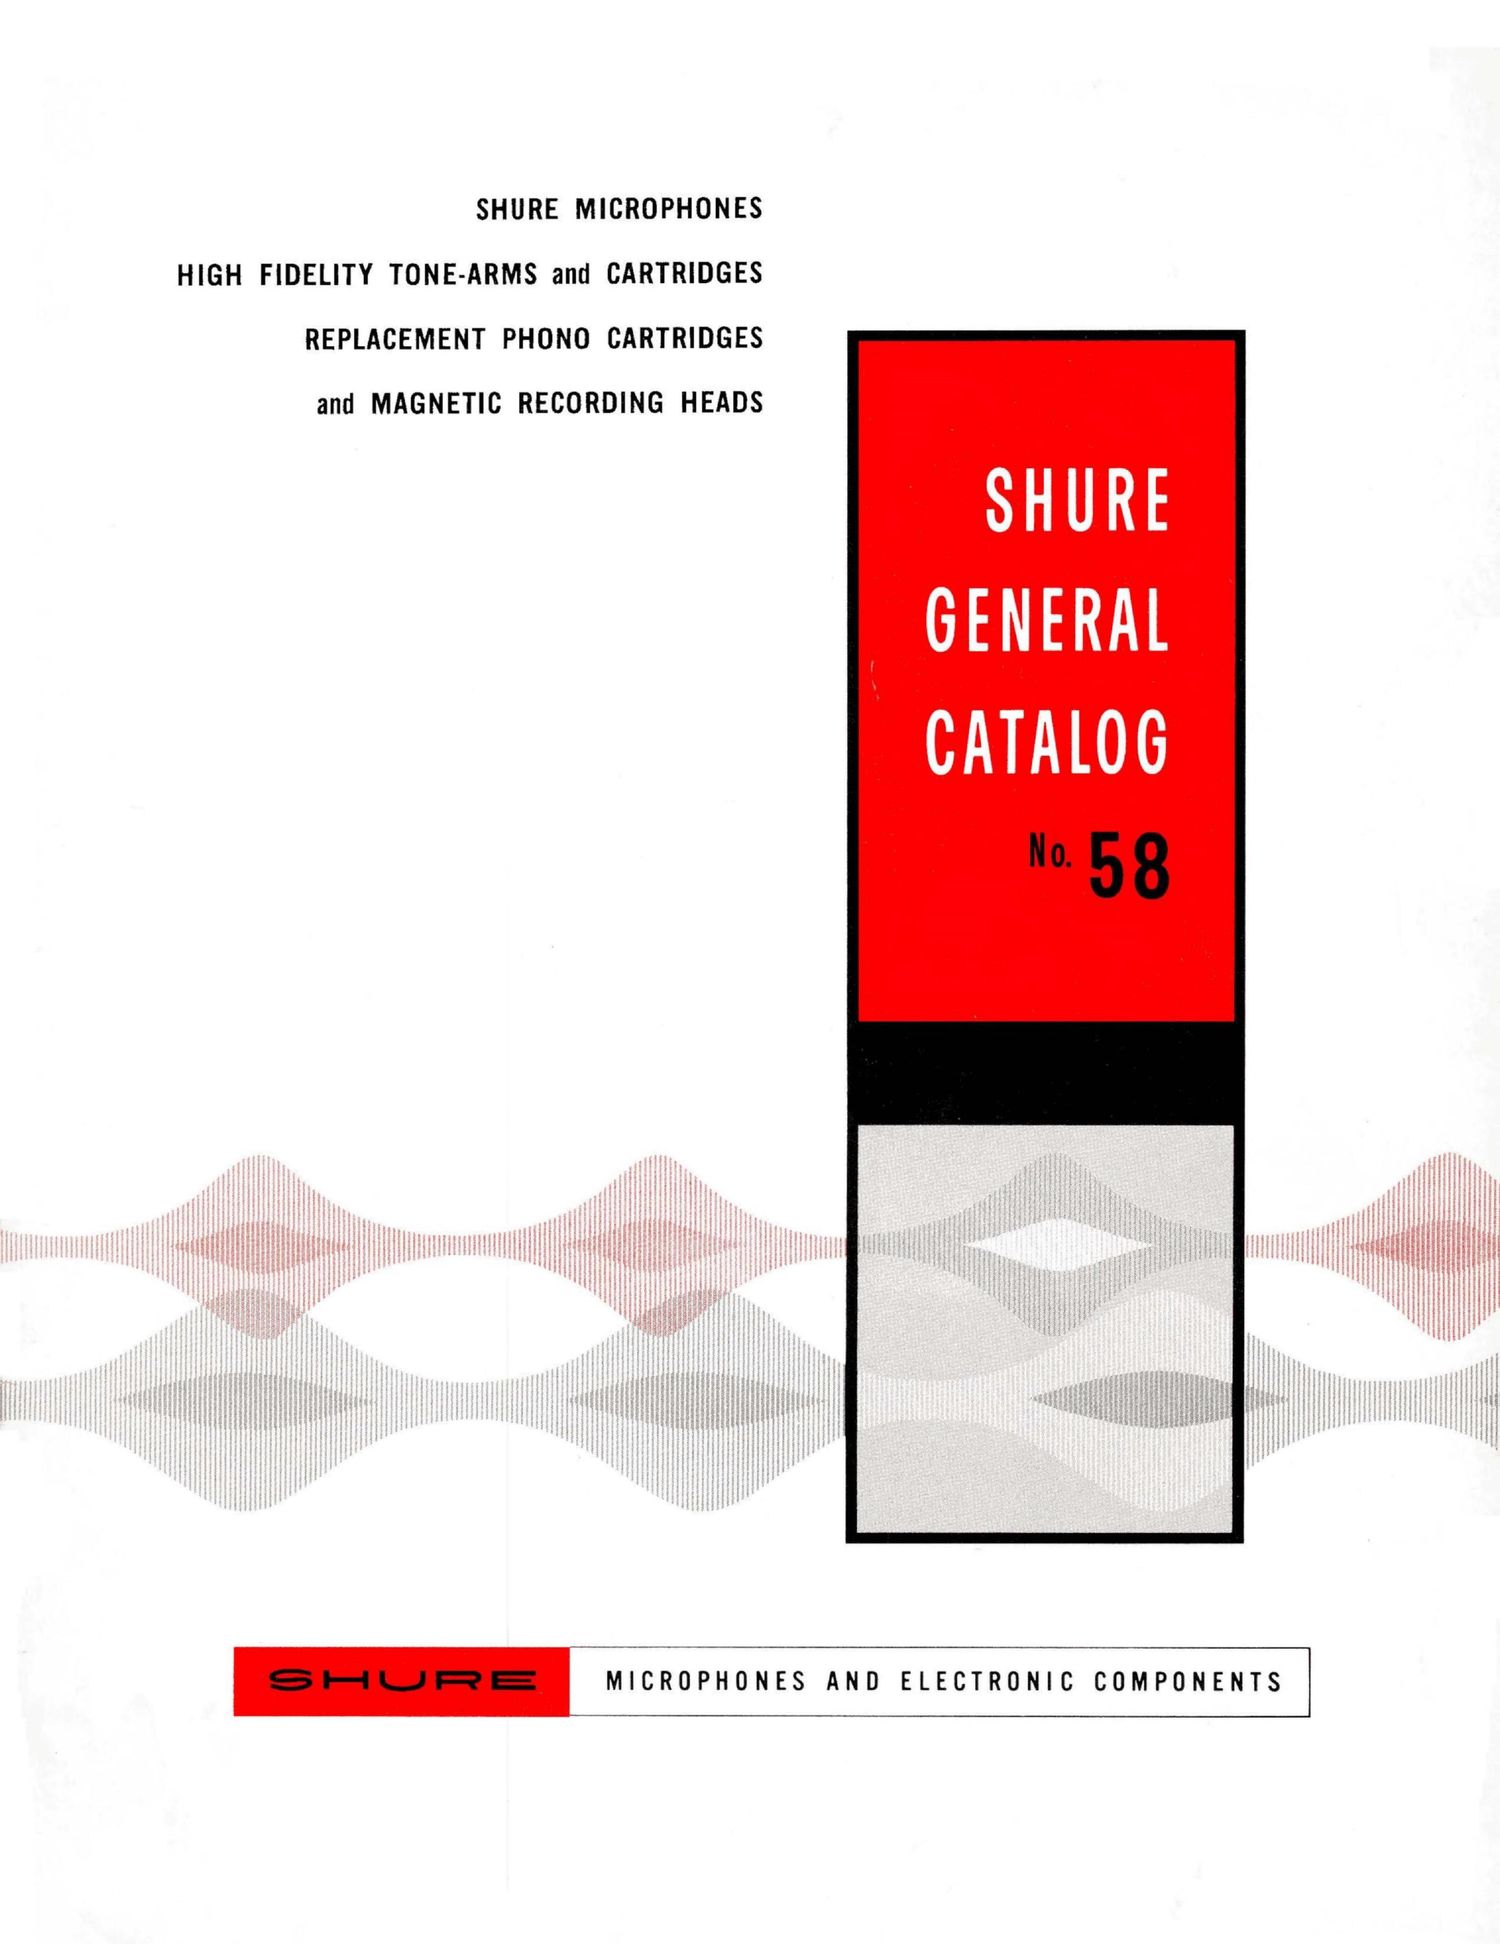 shure 1958 catalogue